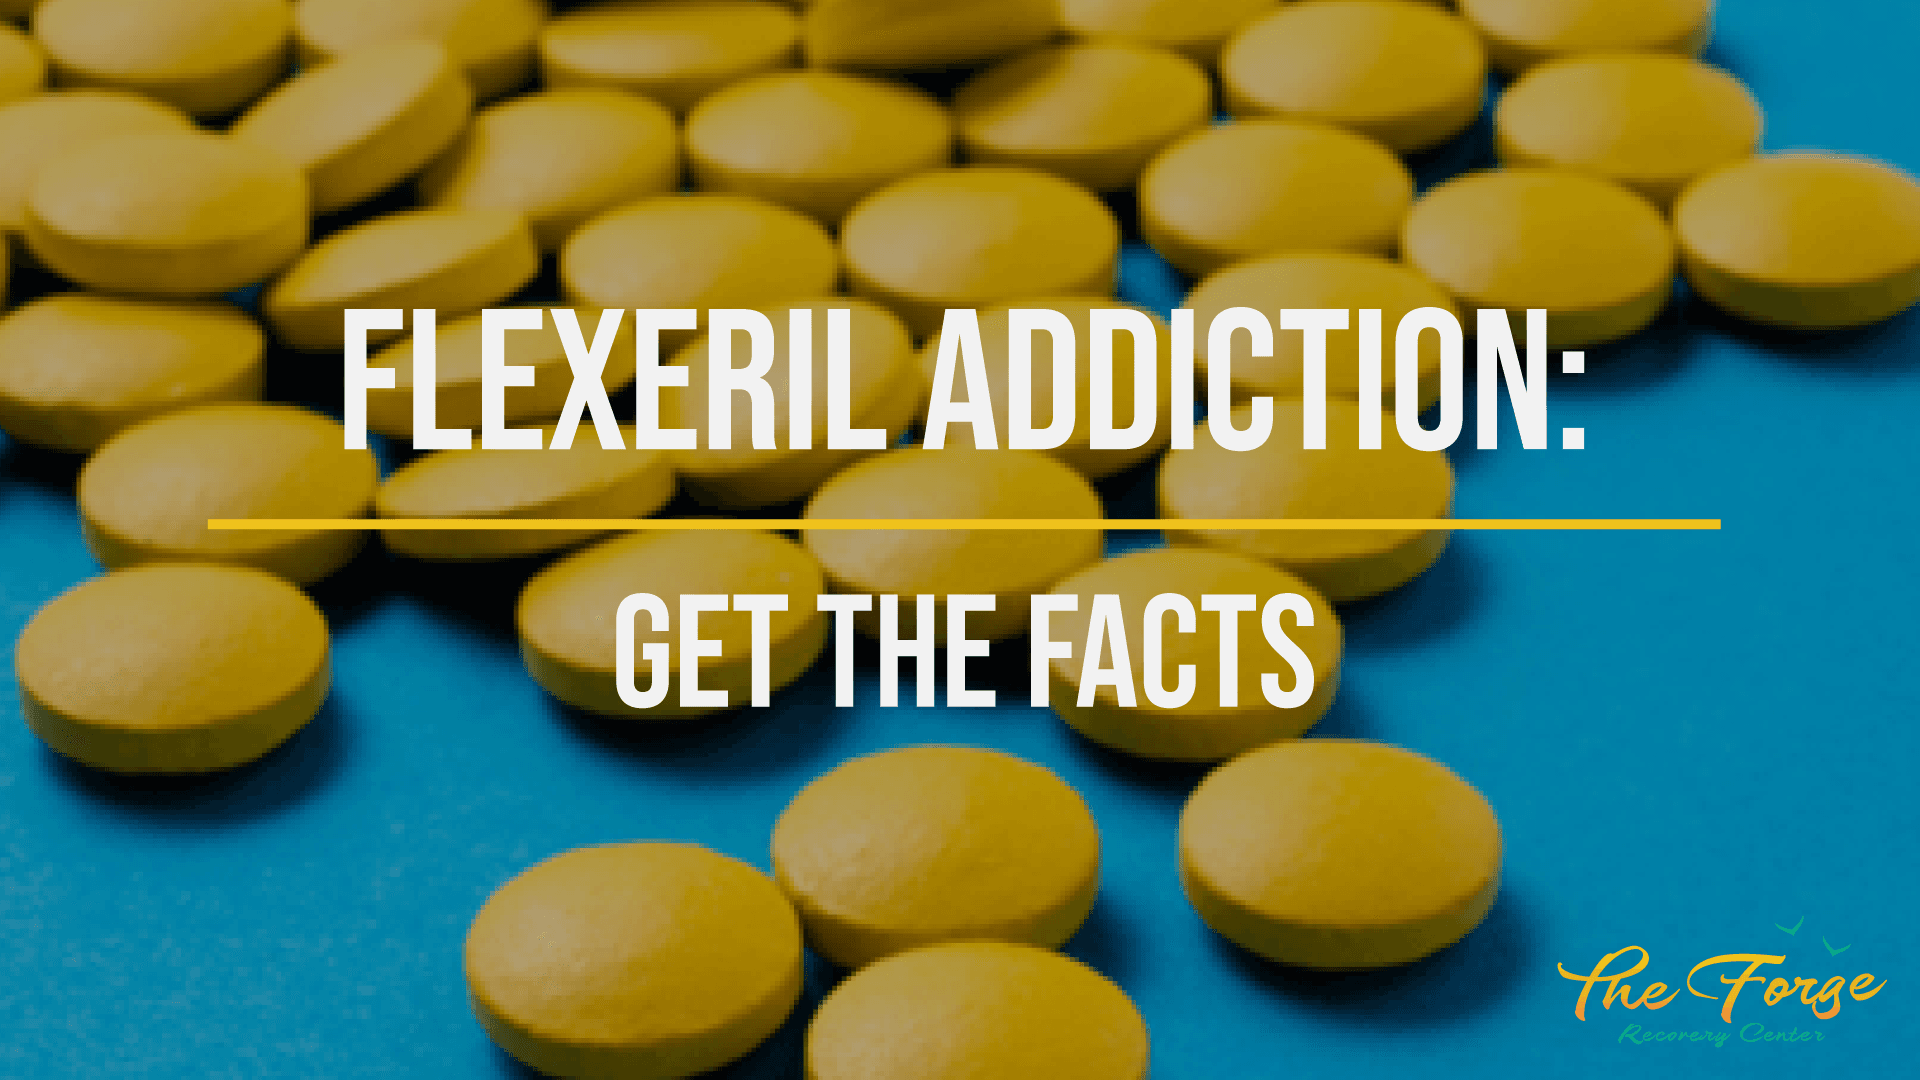 Flexeril Addiction: Is Cyclobenzaprine (Flexeril) Addictive? 